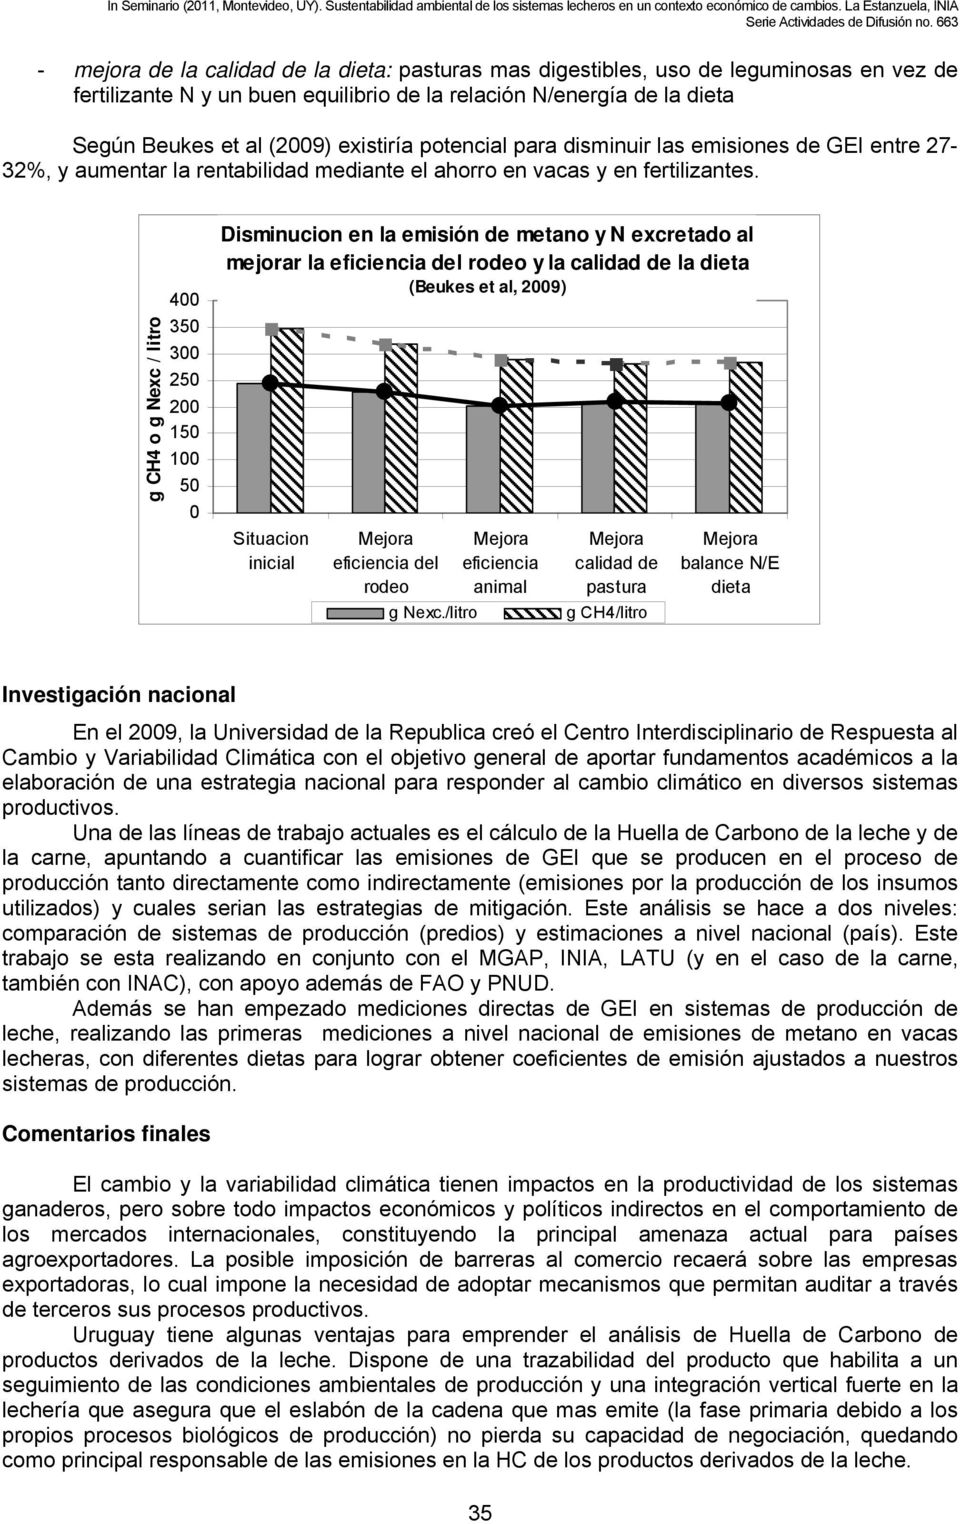 g CH4 o g Nexc / litro 400 350 300 250 200 150 100 50 0 Disminucion en la emisión de metano y N excretado al mejorar la eficiencia del rodeo y la calidad de la dieta (Beukes et al, 2009) Situacion